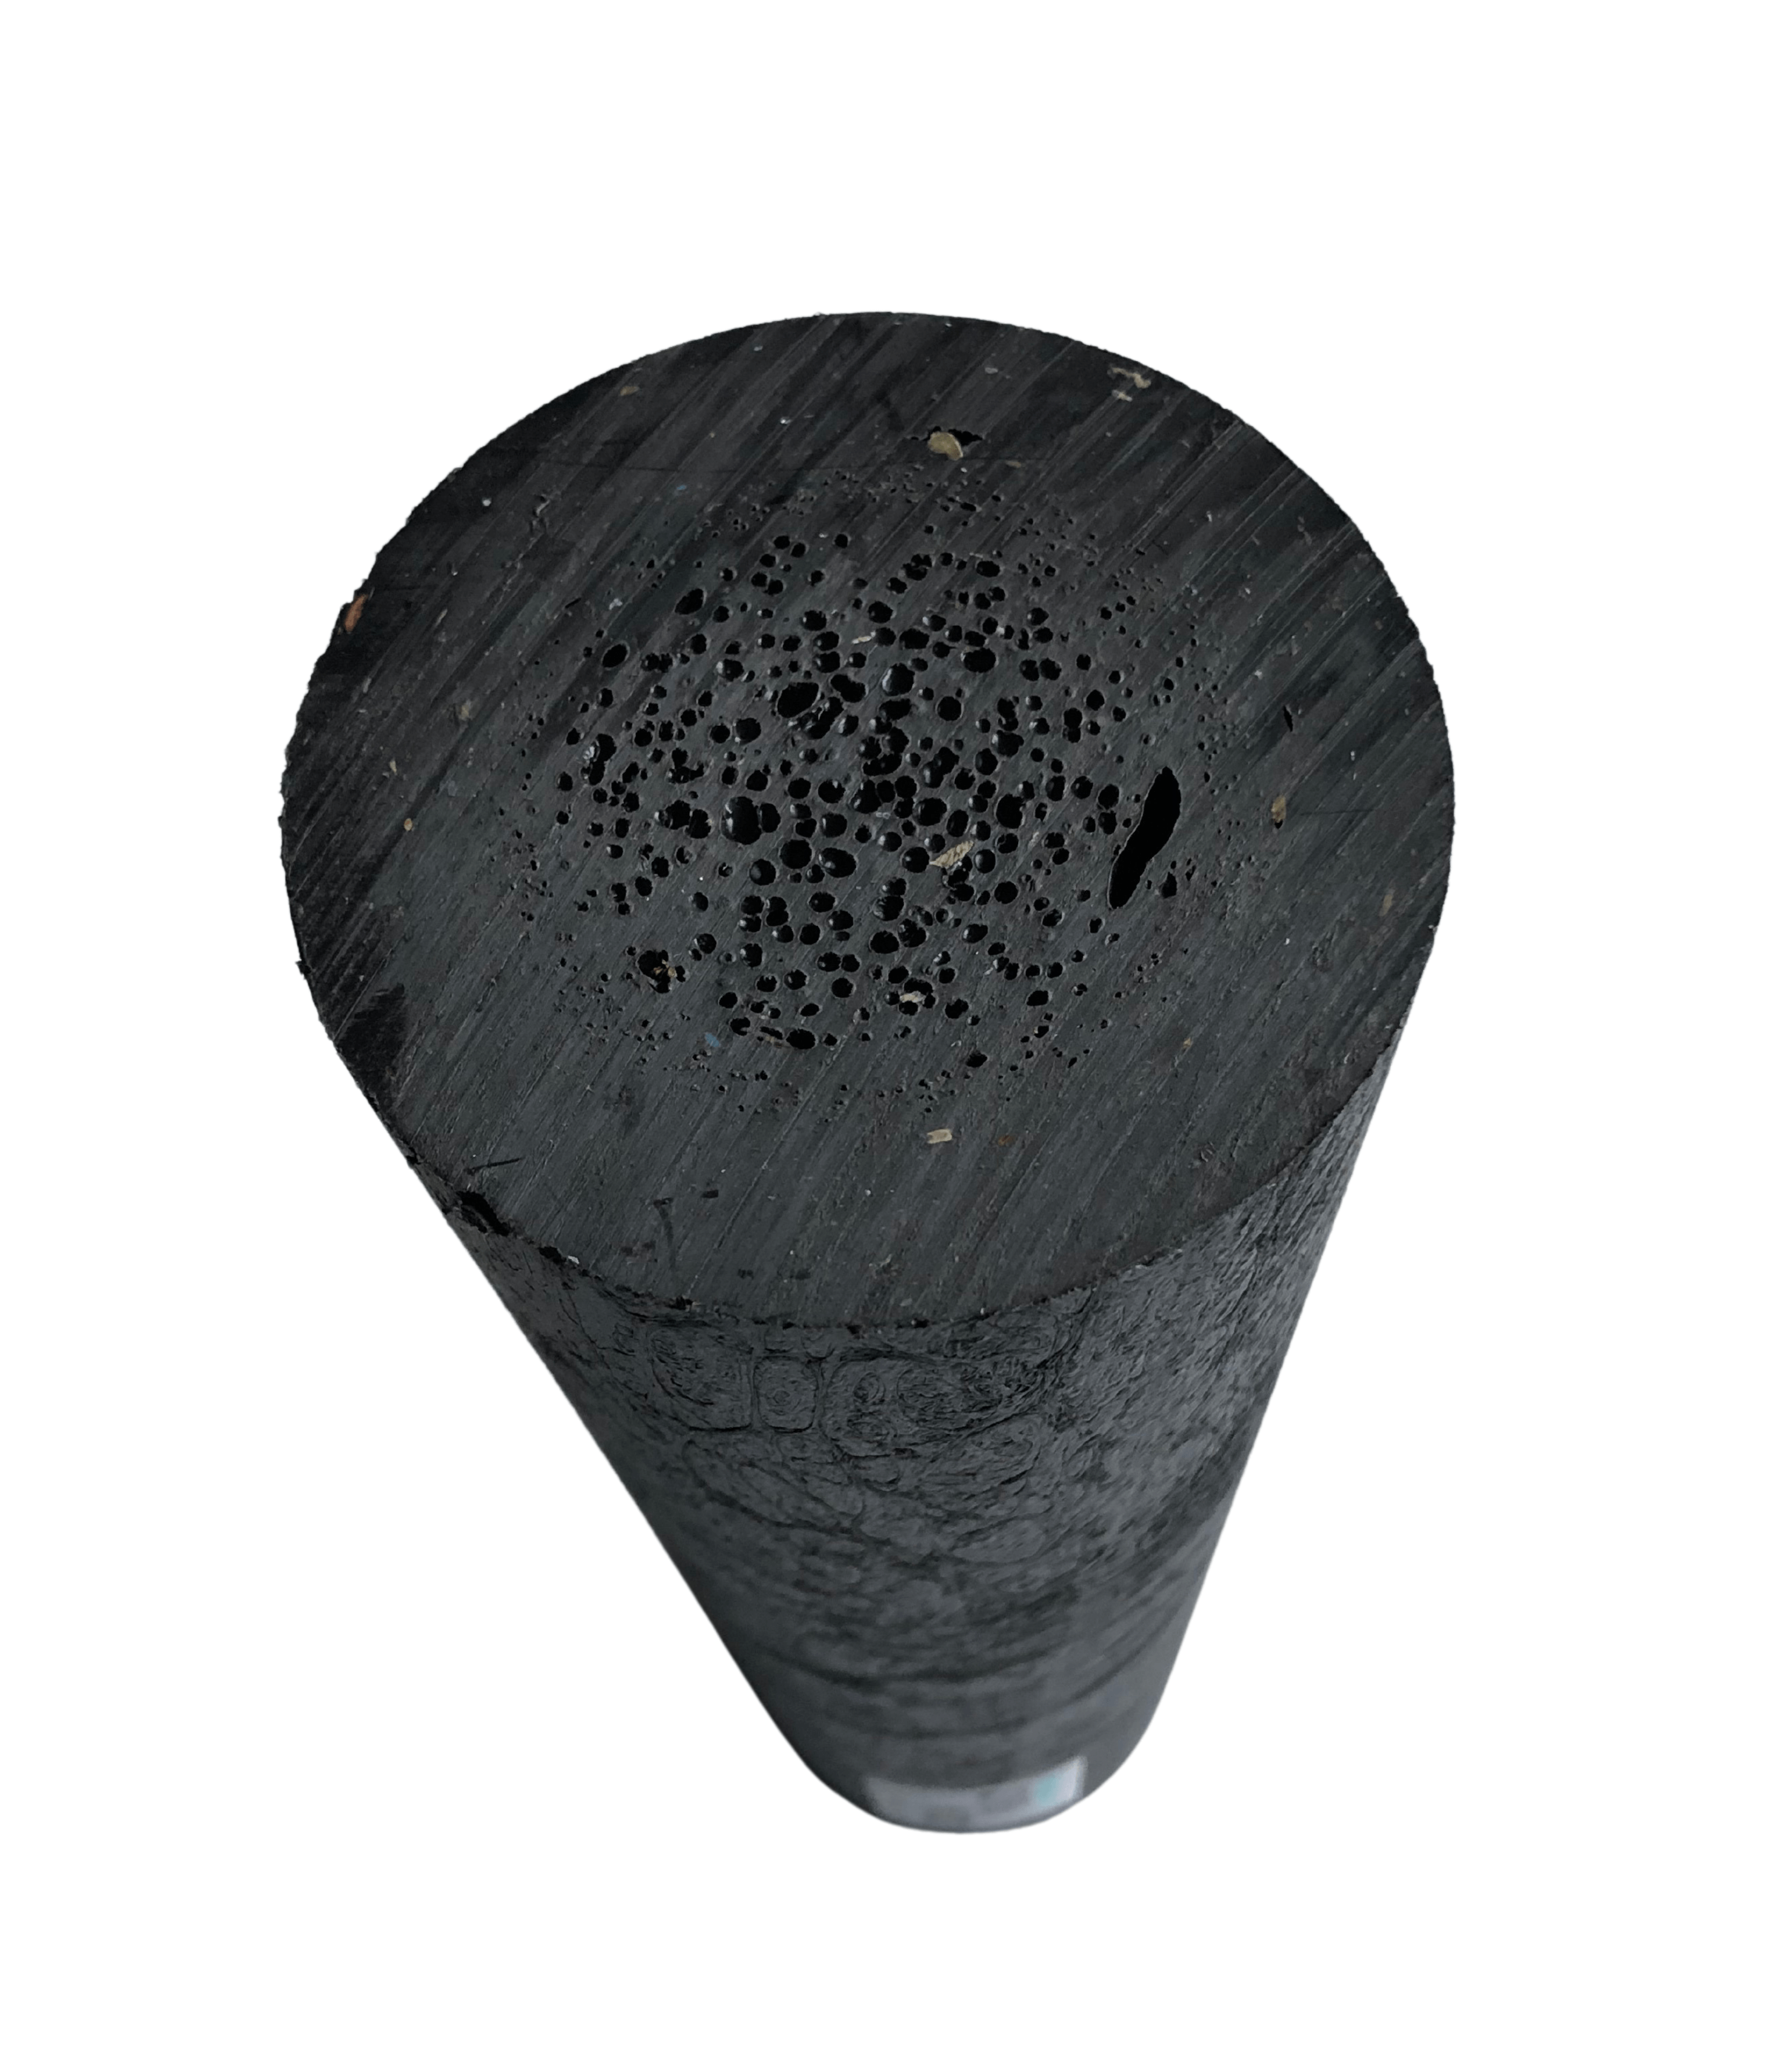 Brug Stolpe Ø10x360 cm Ural Black 1 palle (50 stk.) - Spar 20% til en forbedret oplevelse